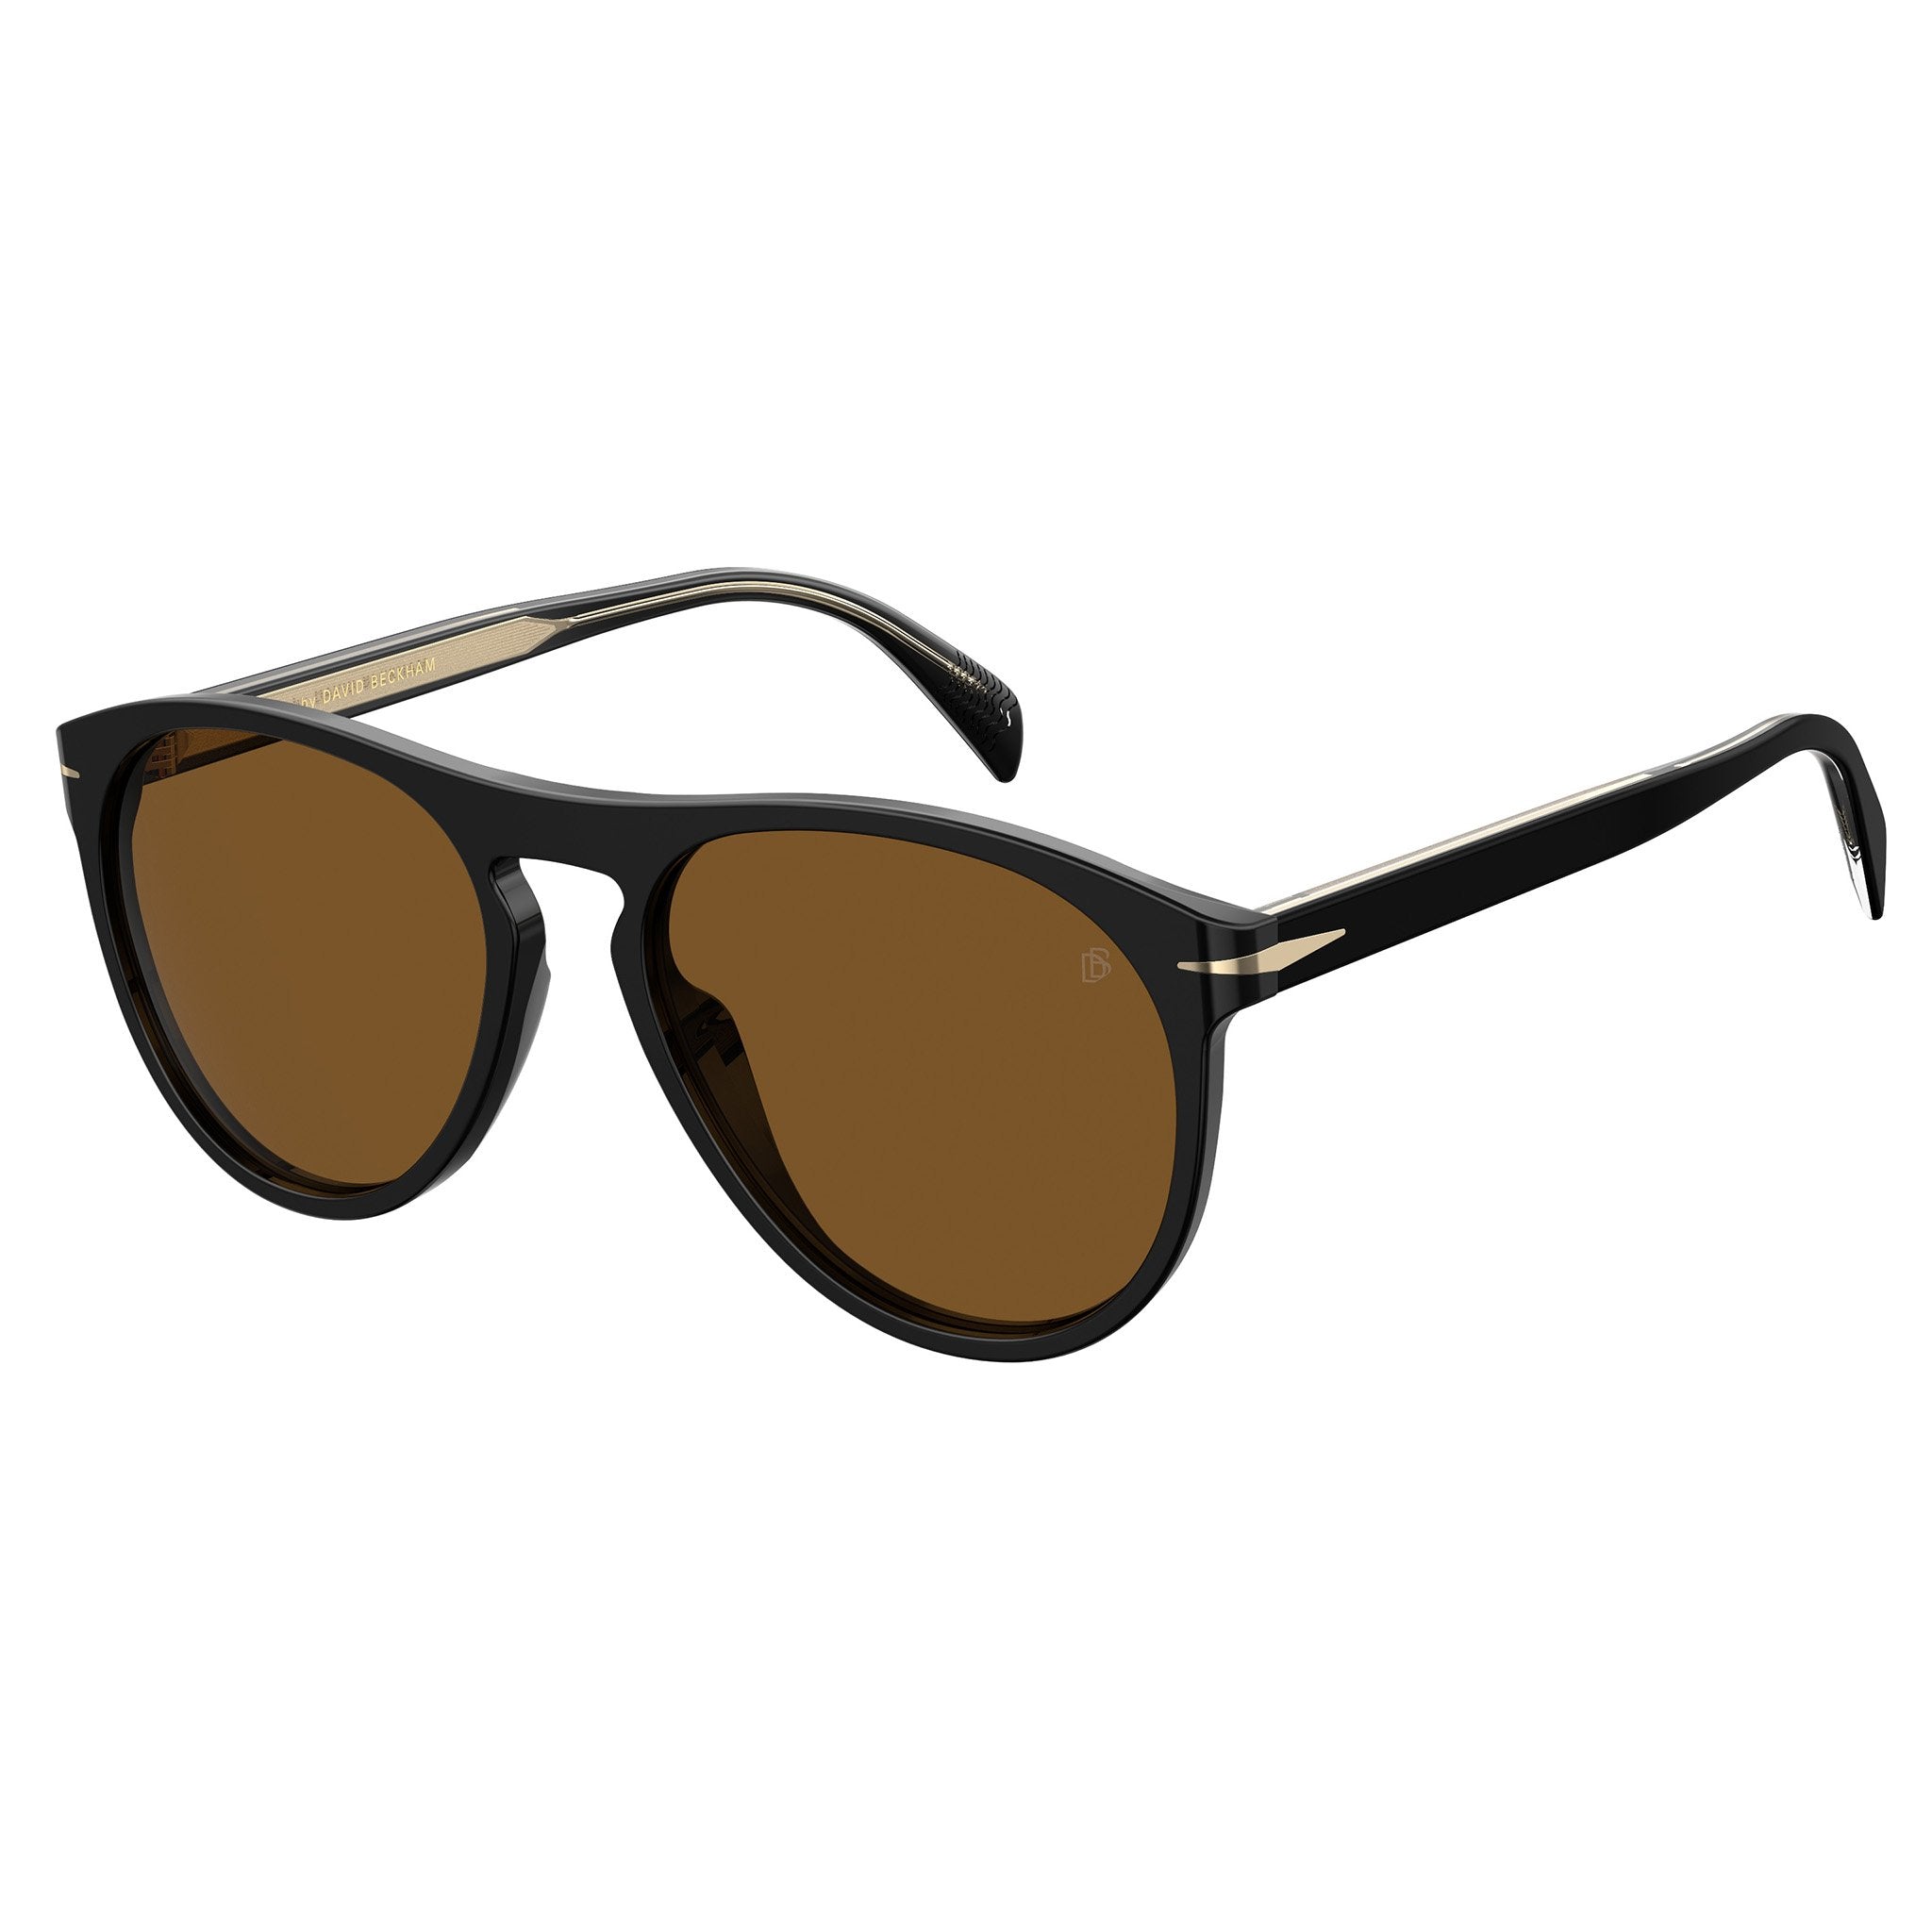 Best Sunglasses for Men: Styles to Upgrade Your Look - Soek